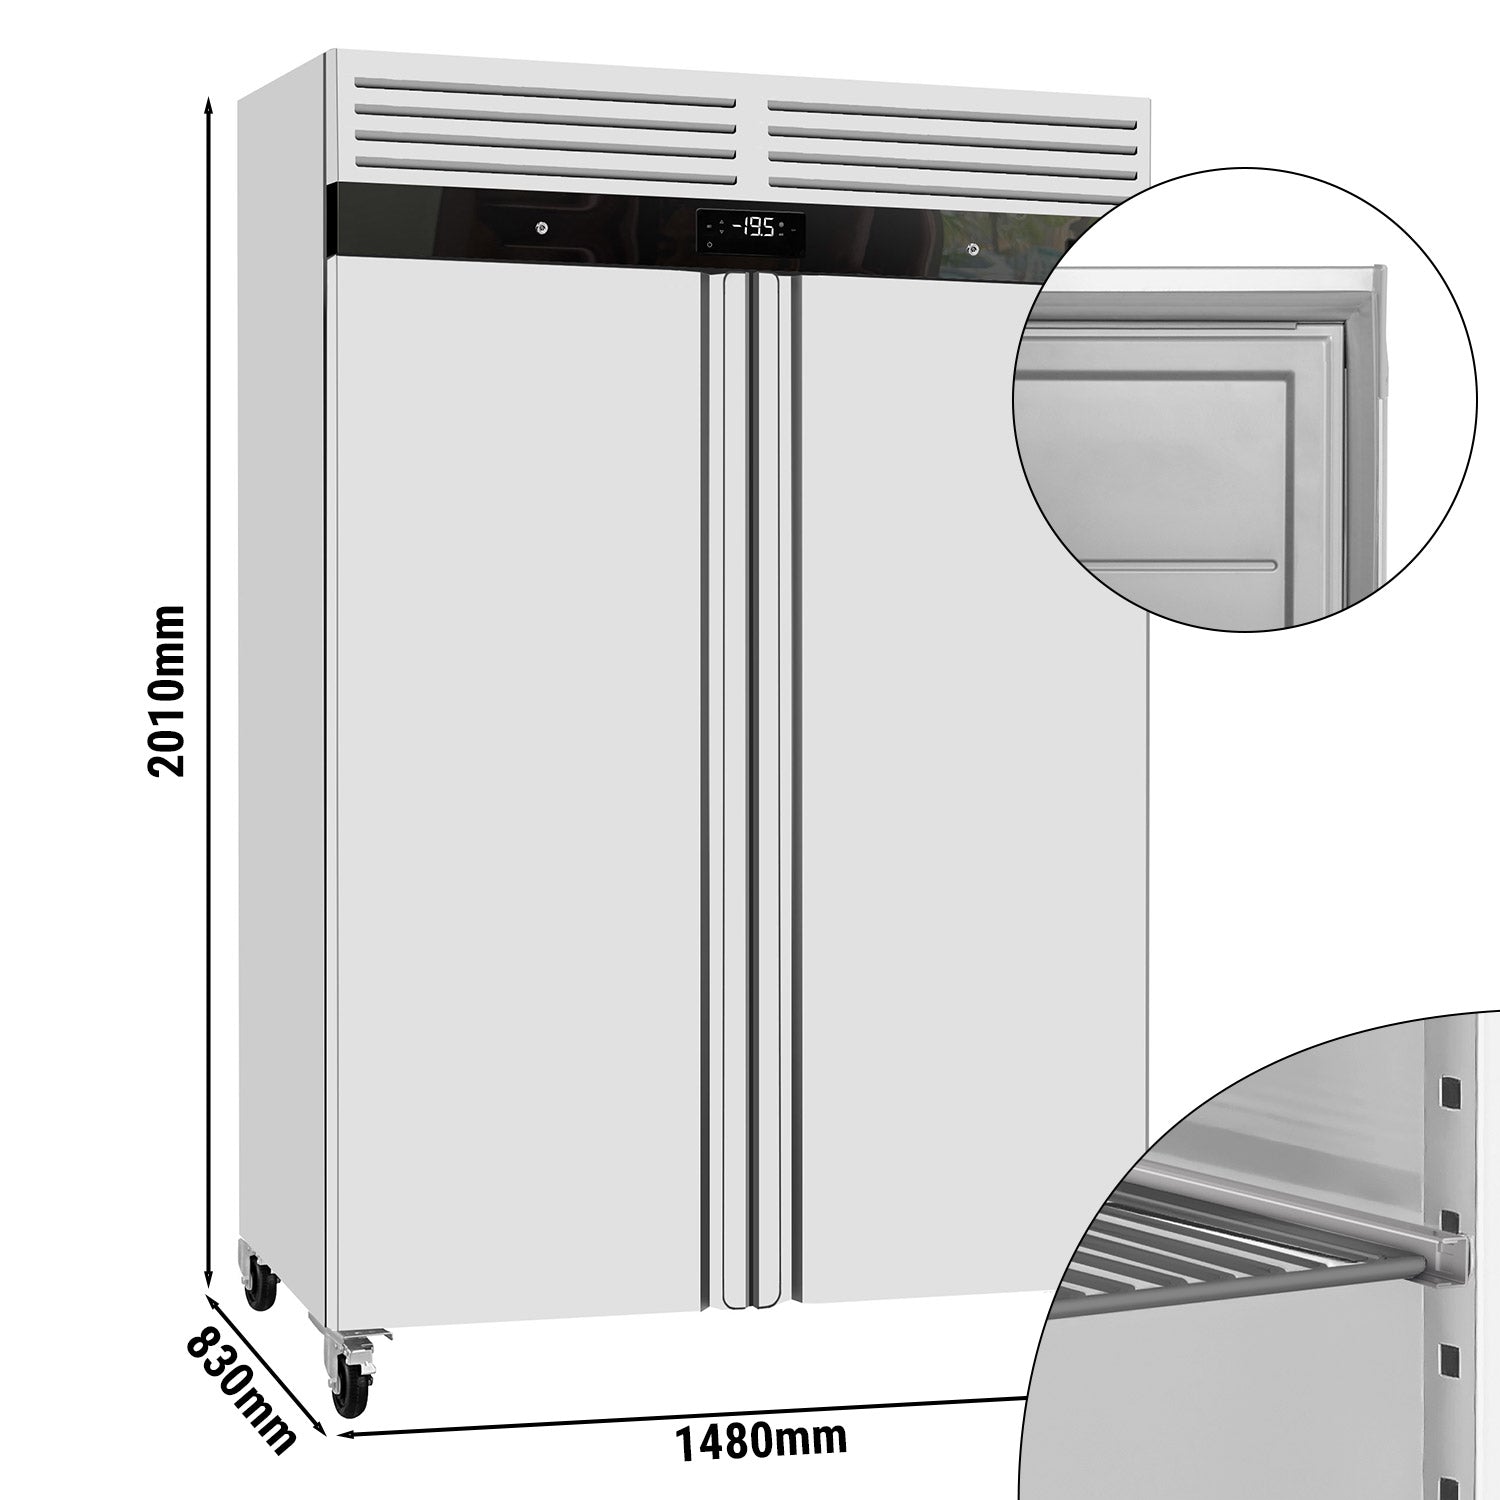 Køleskab ECO - GN 2/1 - 1340 liter - 2 døre